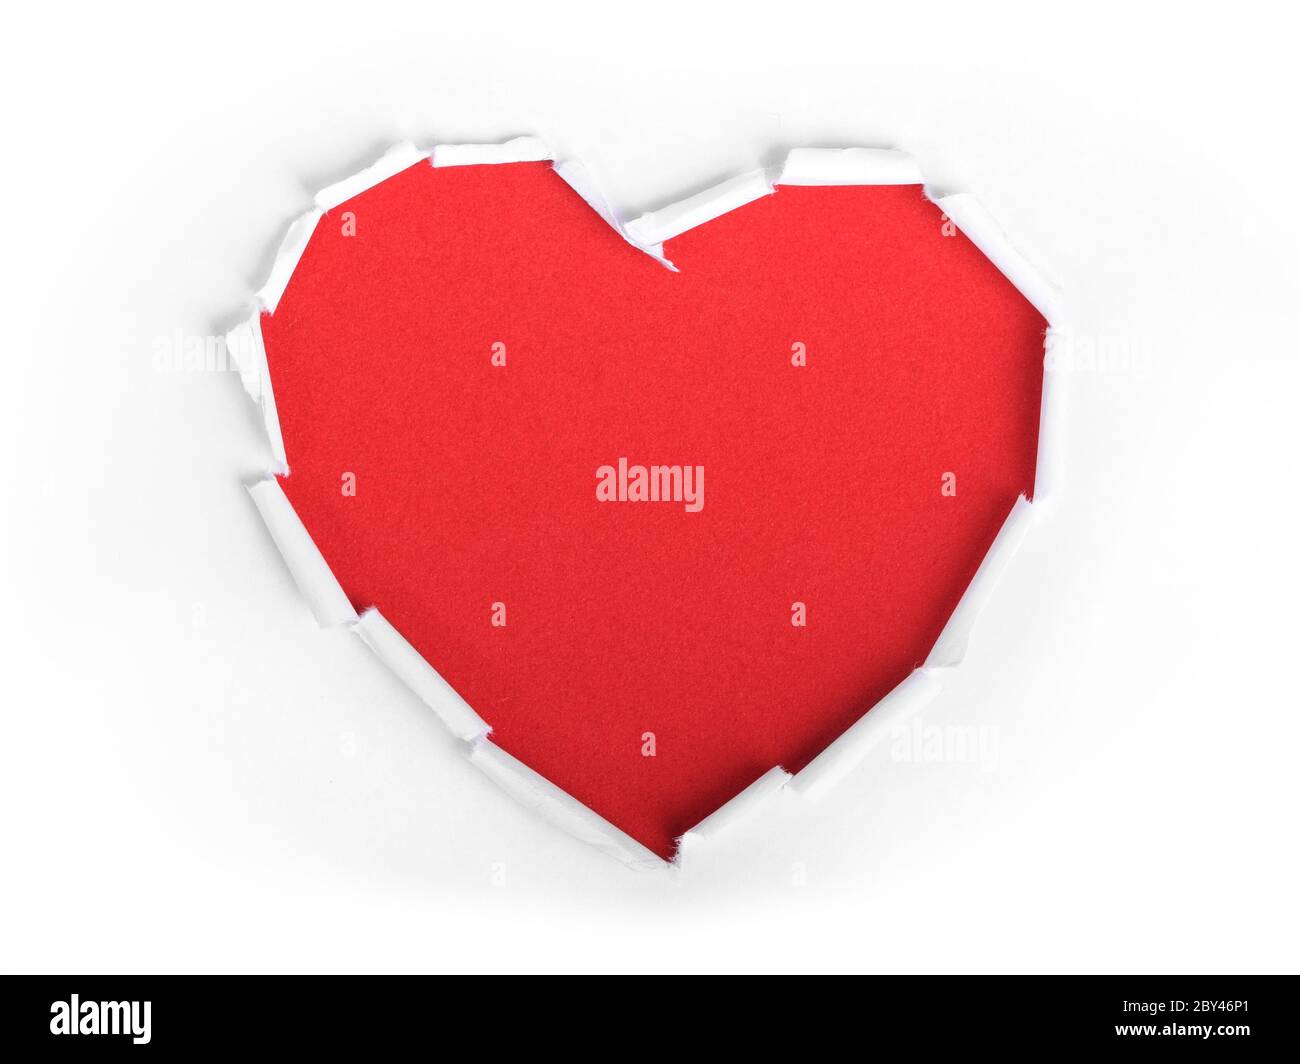 Heart shape symbol Stock Photo